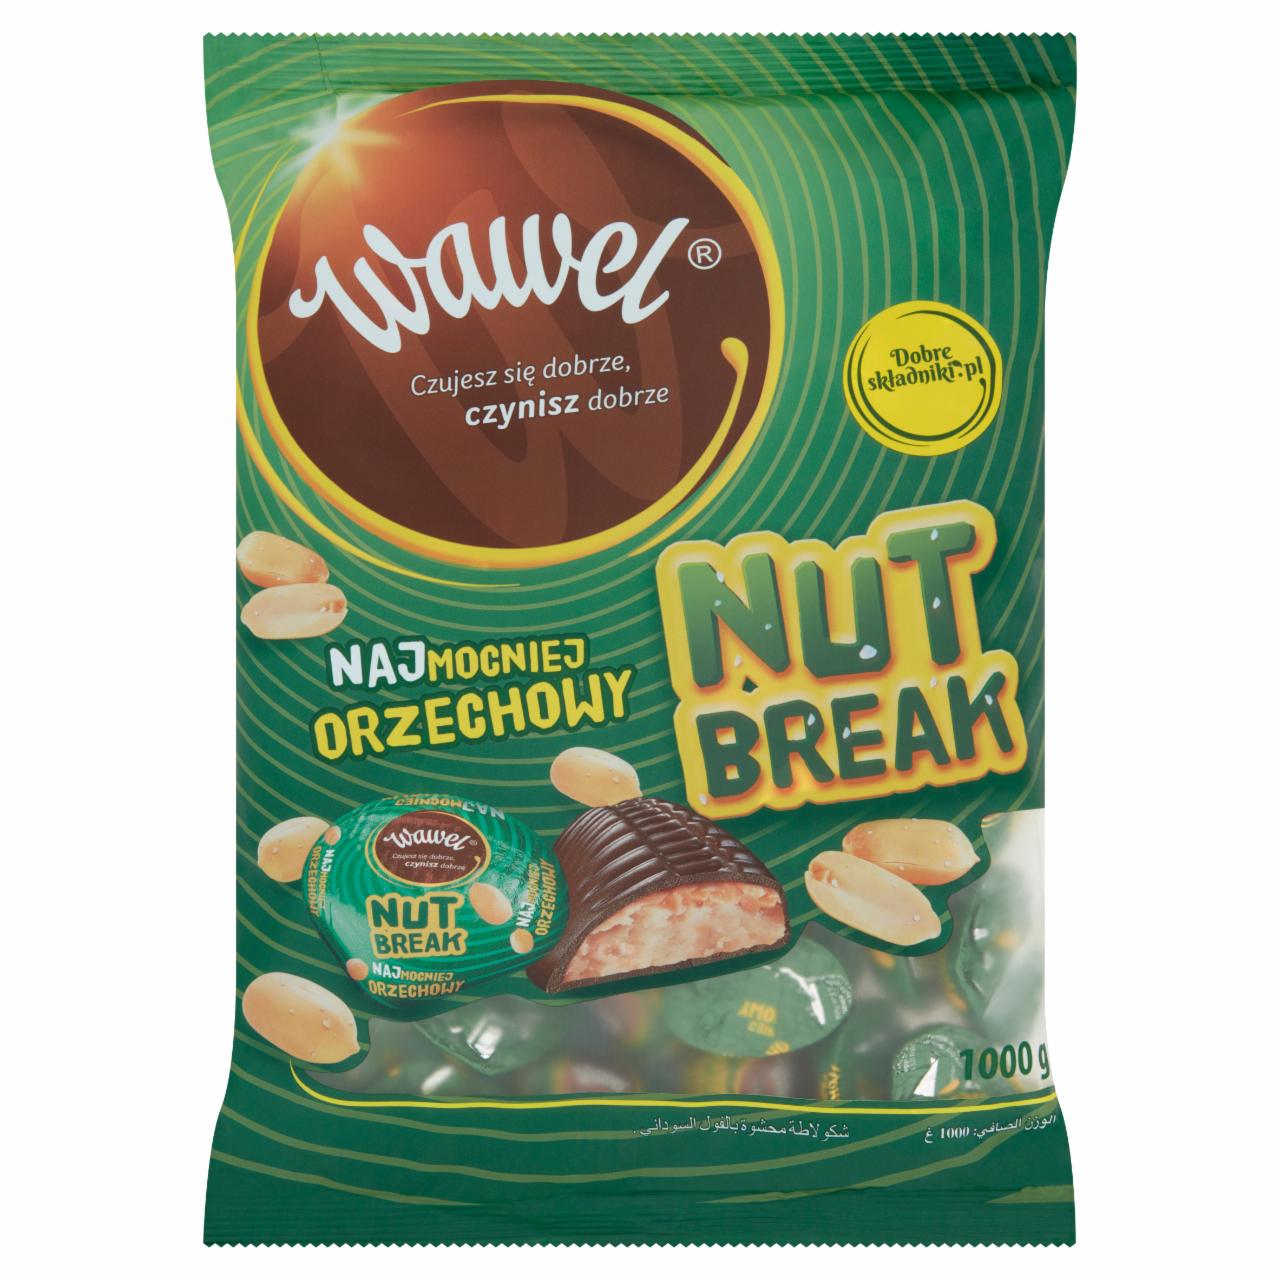 Zdjęcia - Wawel Nut Break Czekolada z nadzieniem 1000 g